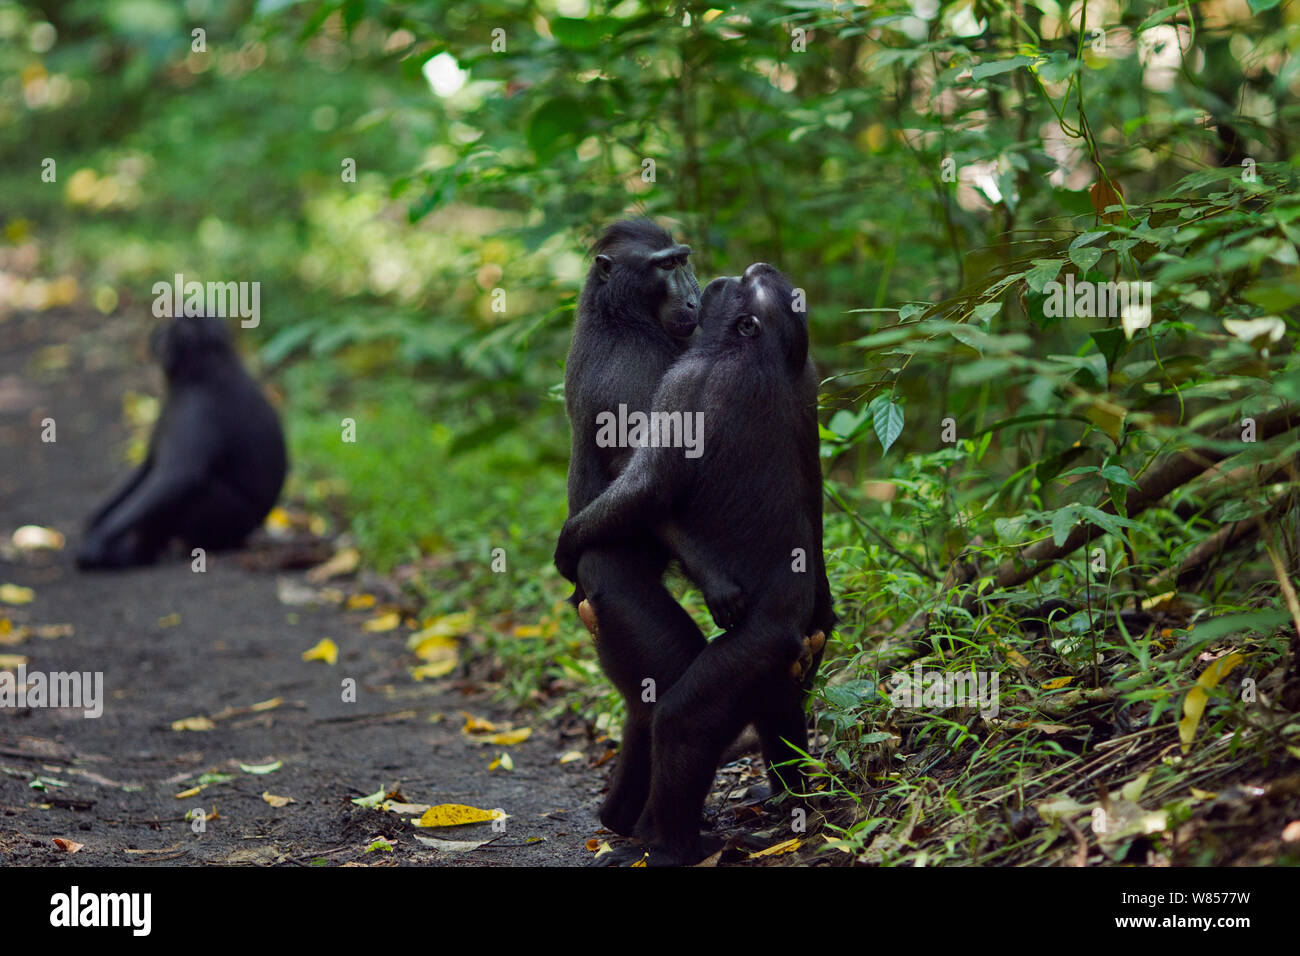 Celebes/Schwarz crested Makaken (Macaca nigra) Männer von den rivalisierenden Gruppen Begrüßung durch ständigen und umarmen, Tangkoko National Park, Sulawesi, Indonesien. Stockfoto